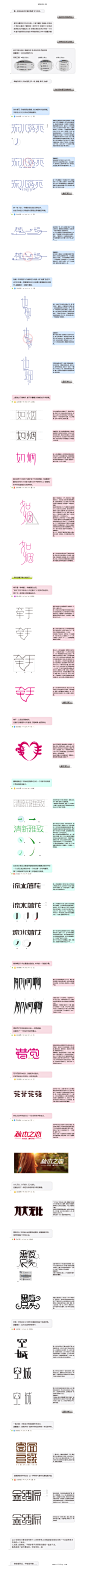 字体传奇网-字体设计心得教程分析_字体传奇网-中国首个字体品牌设计师交流网